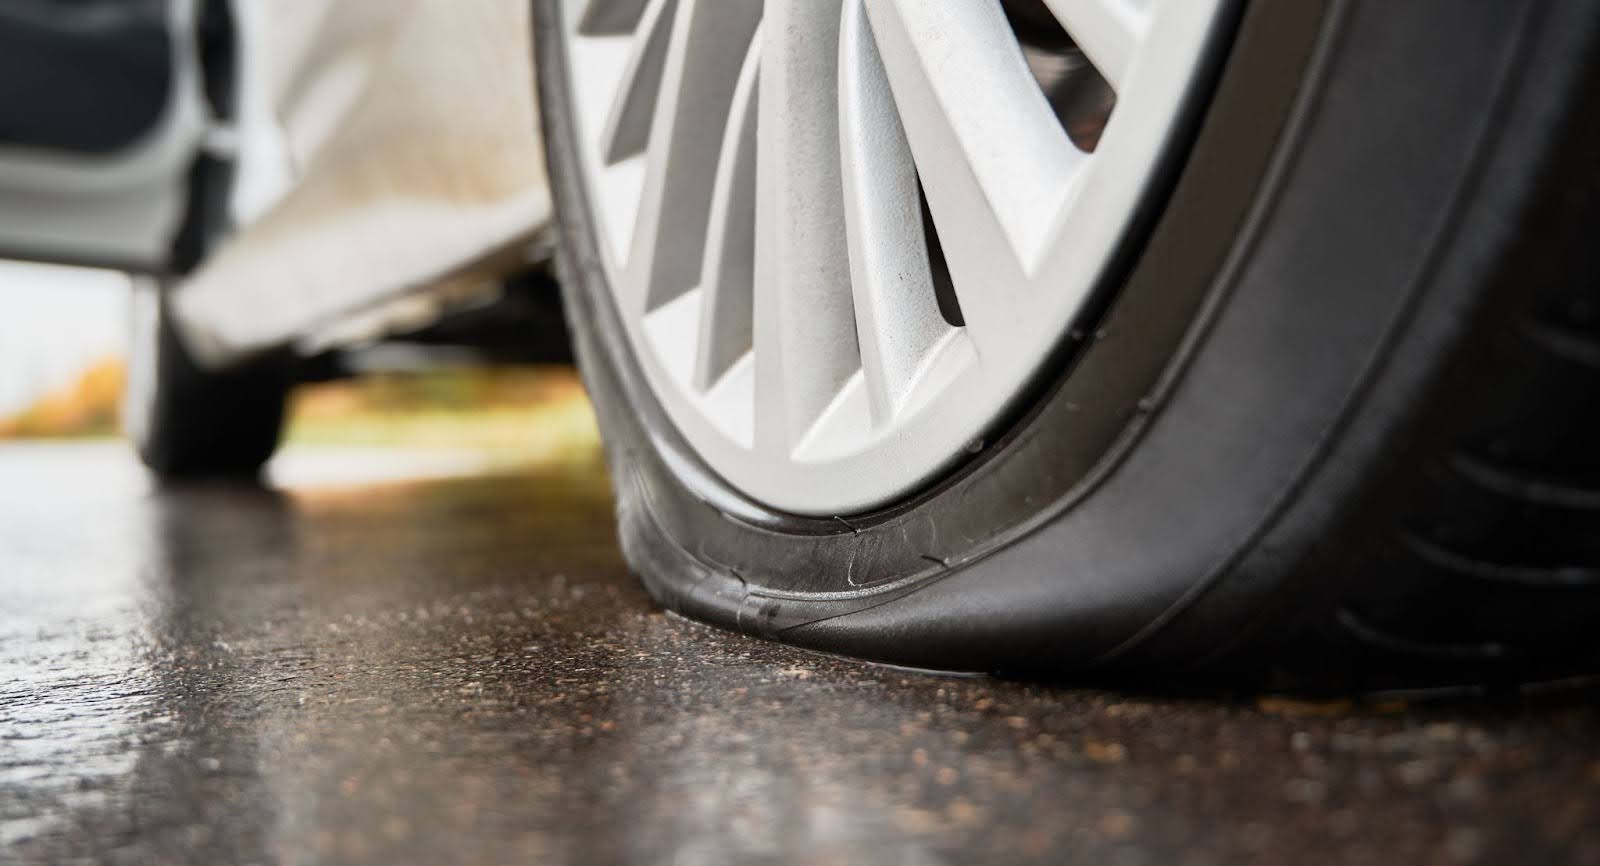 Imagem em close-up de uma roda de um carro branco com o pneu murcho sobre o asfalto.